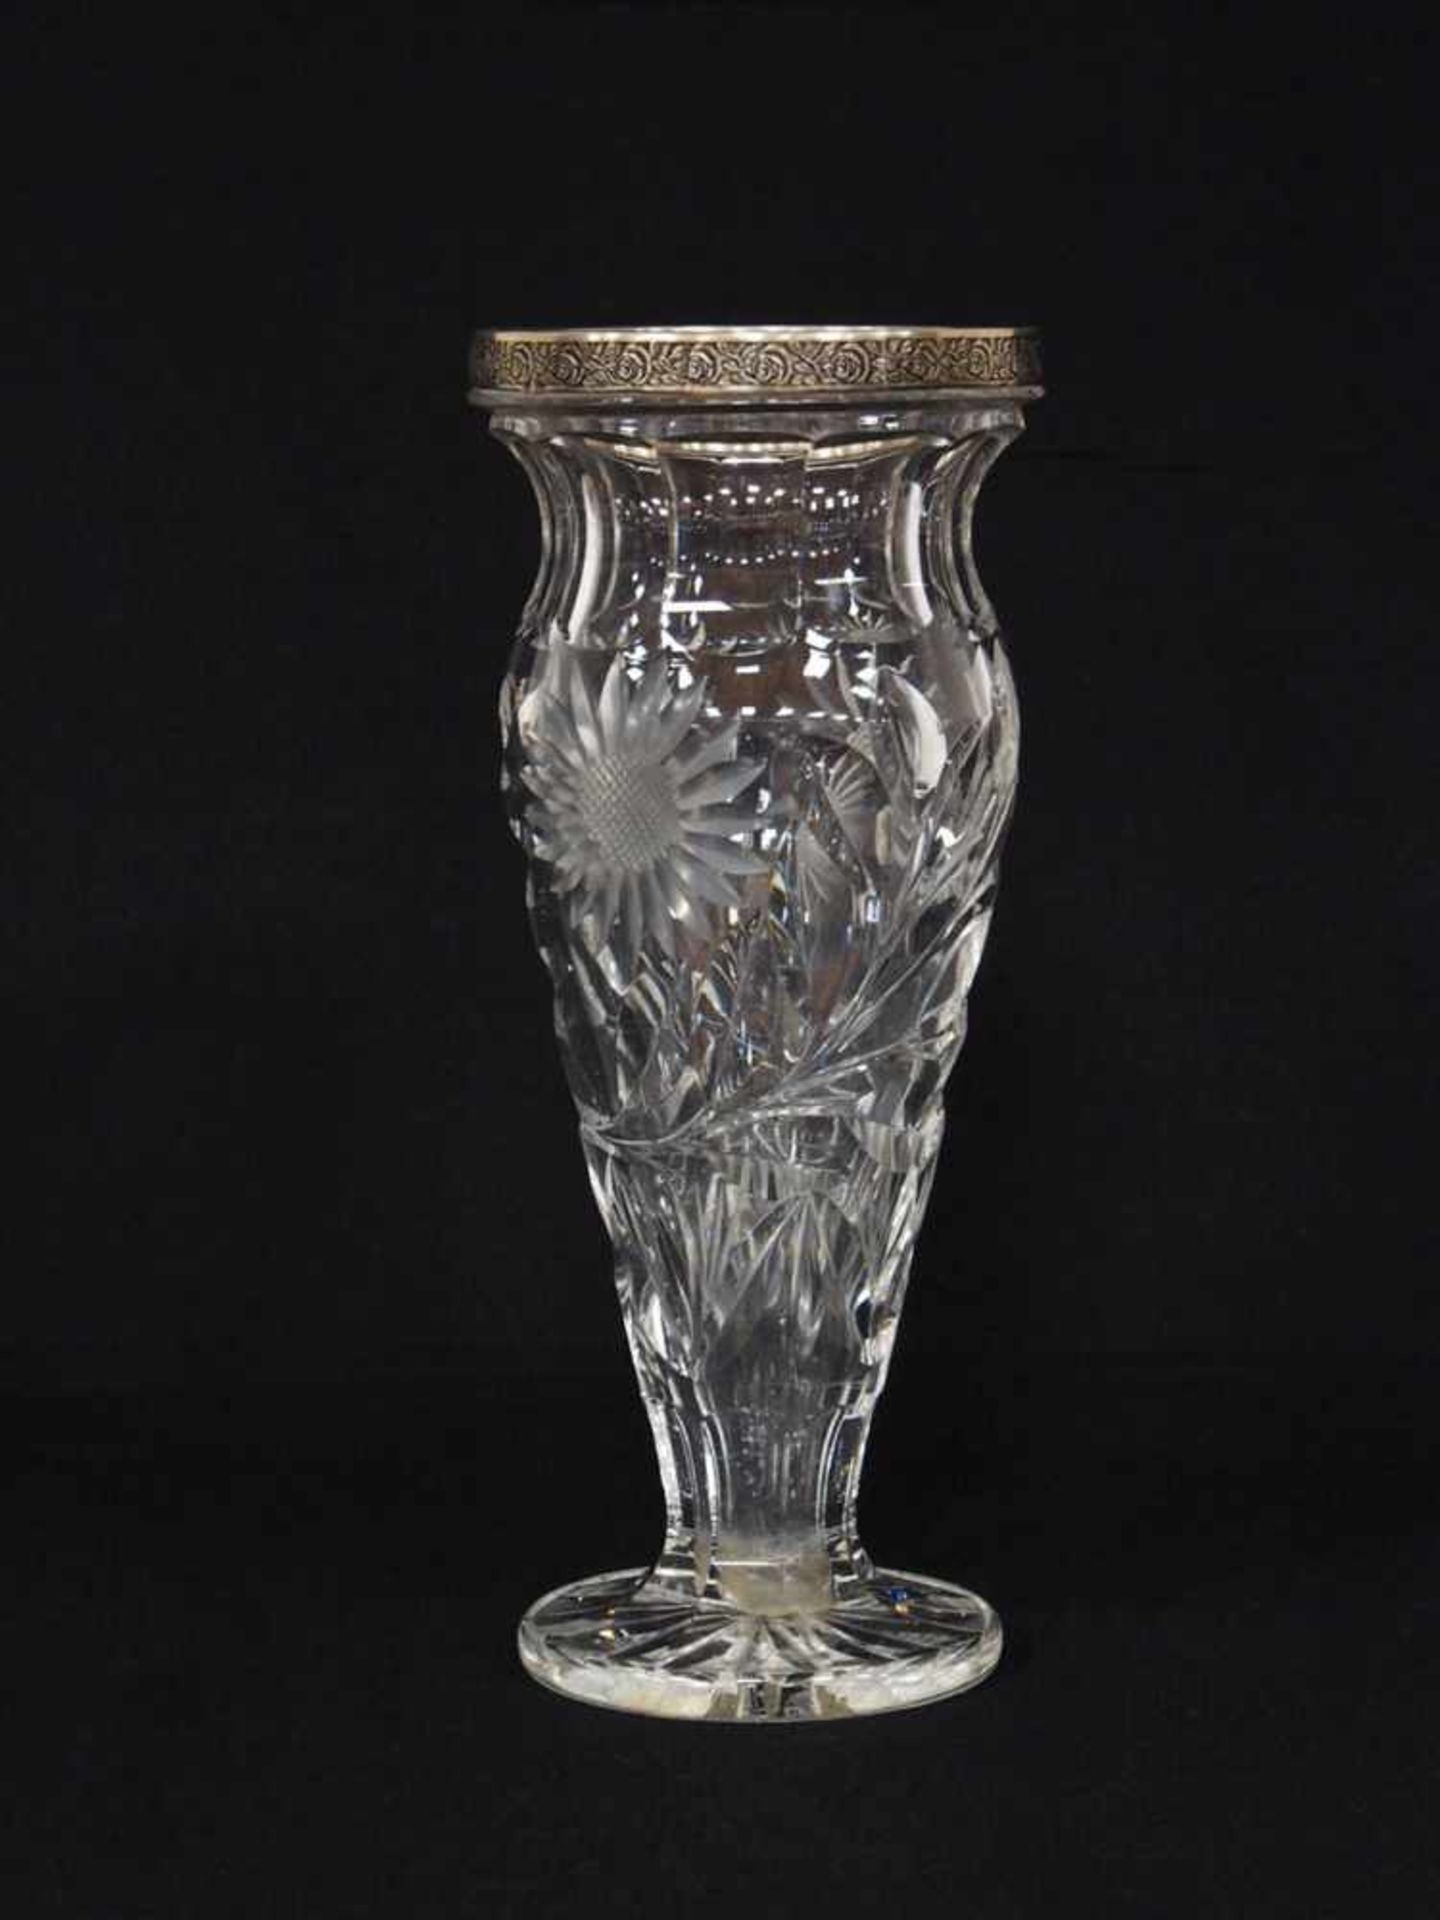 VaseKristallglas mit Silbermontierung, Russland, um 1950, Höhe 29 cm